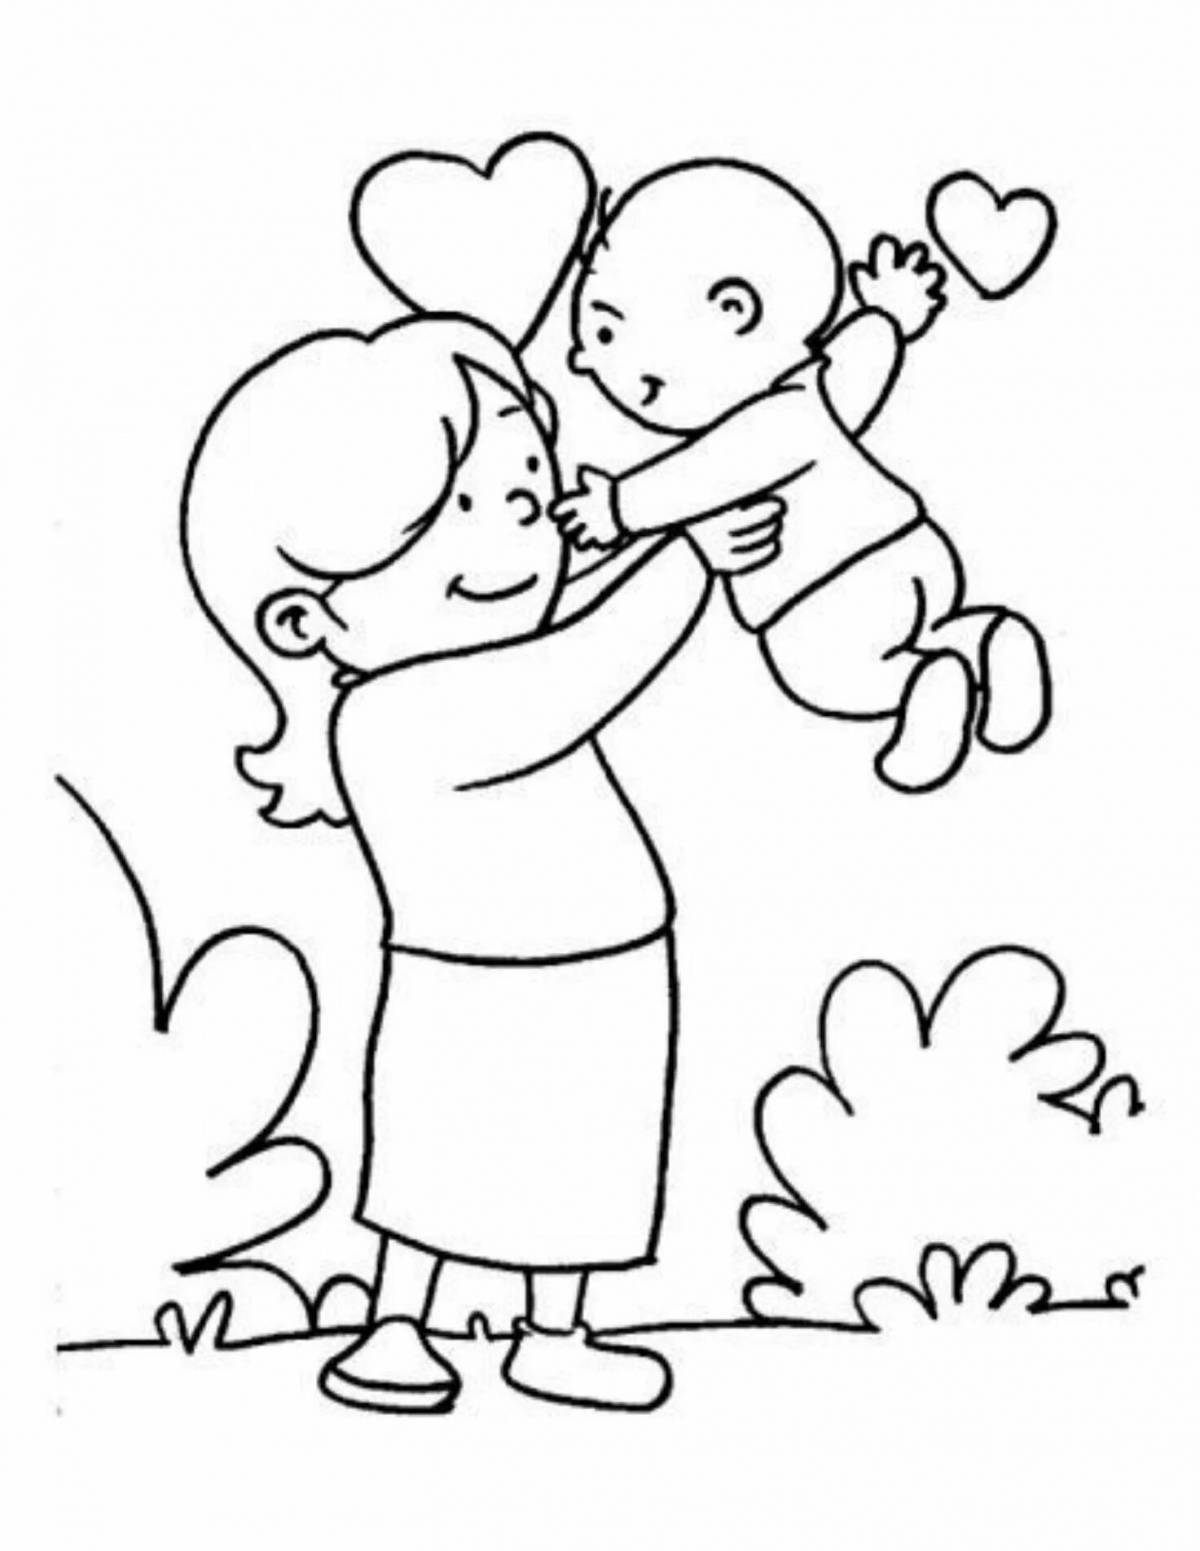 Раскраска Дети поздравляют свою маму, скачать и распечатать раскраску раздела День Мамы